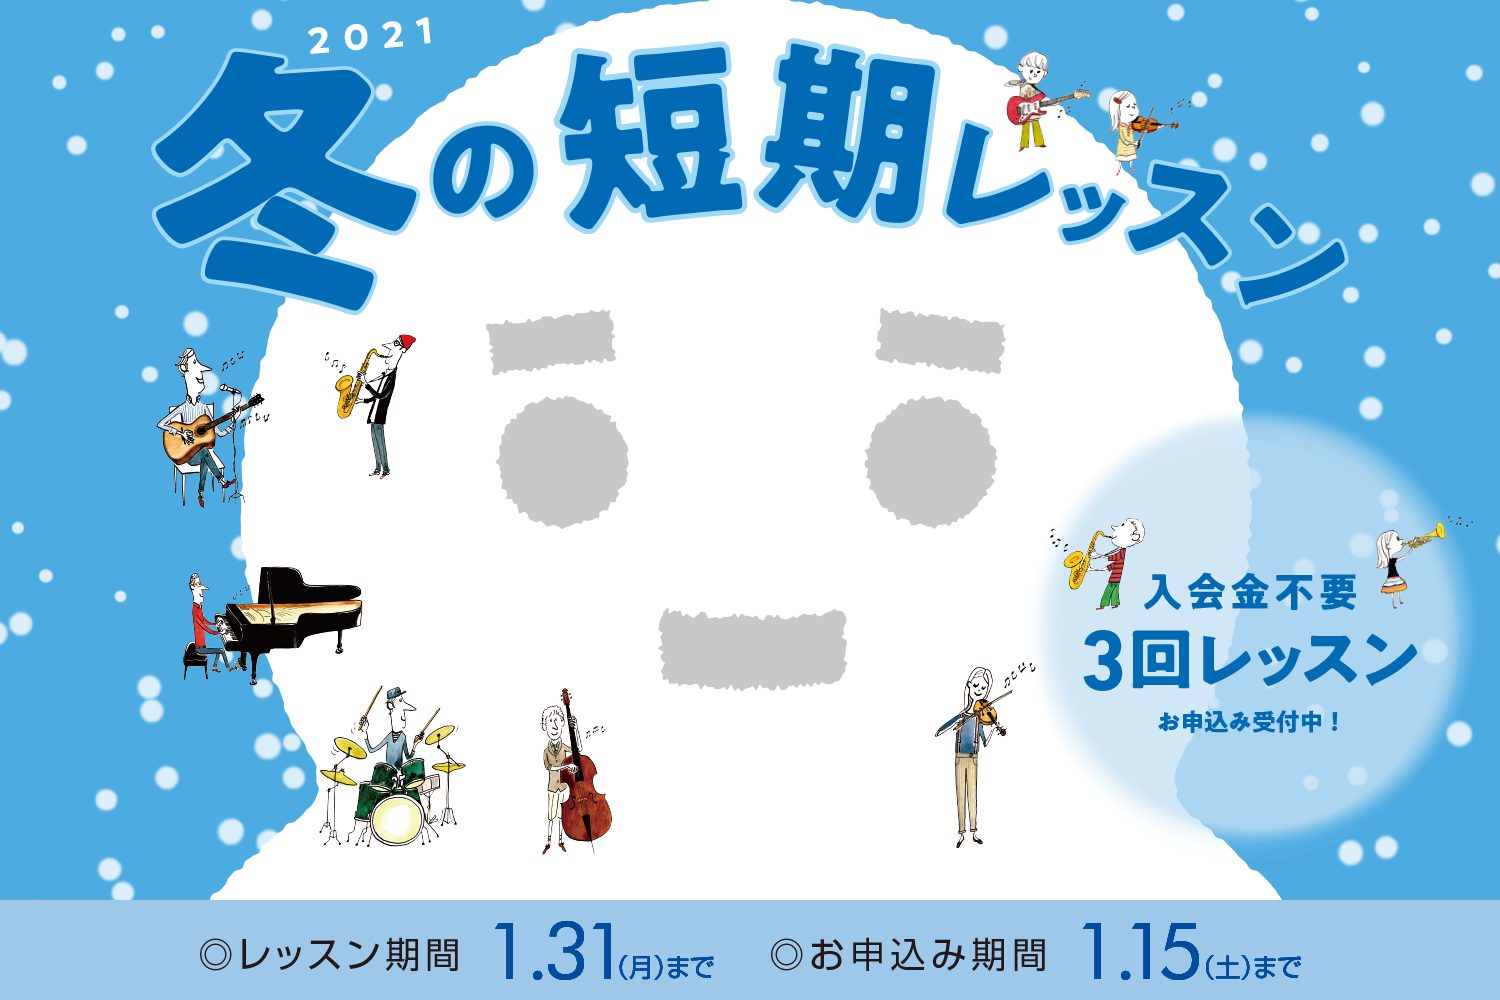 こんにちは、[https://www.shimamura.co.jp/shop/ms-ikebukuro/lesson-guide:title=島村楽器ミュージックサロン池袋]スタッフの村西です。 吹奏楽部の皆さん！朗報です！ 島村楽器では現在、入会金不要で期間内にレッスンを受講出来る冬の短期レッス […]